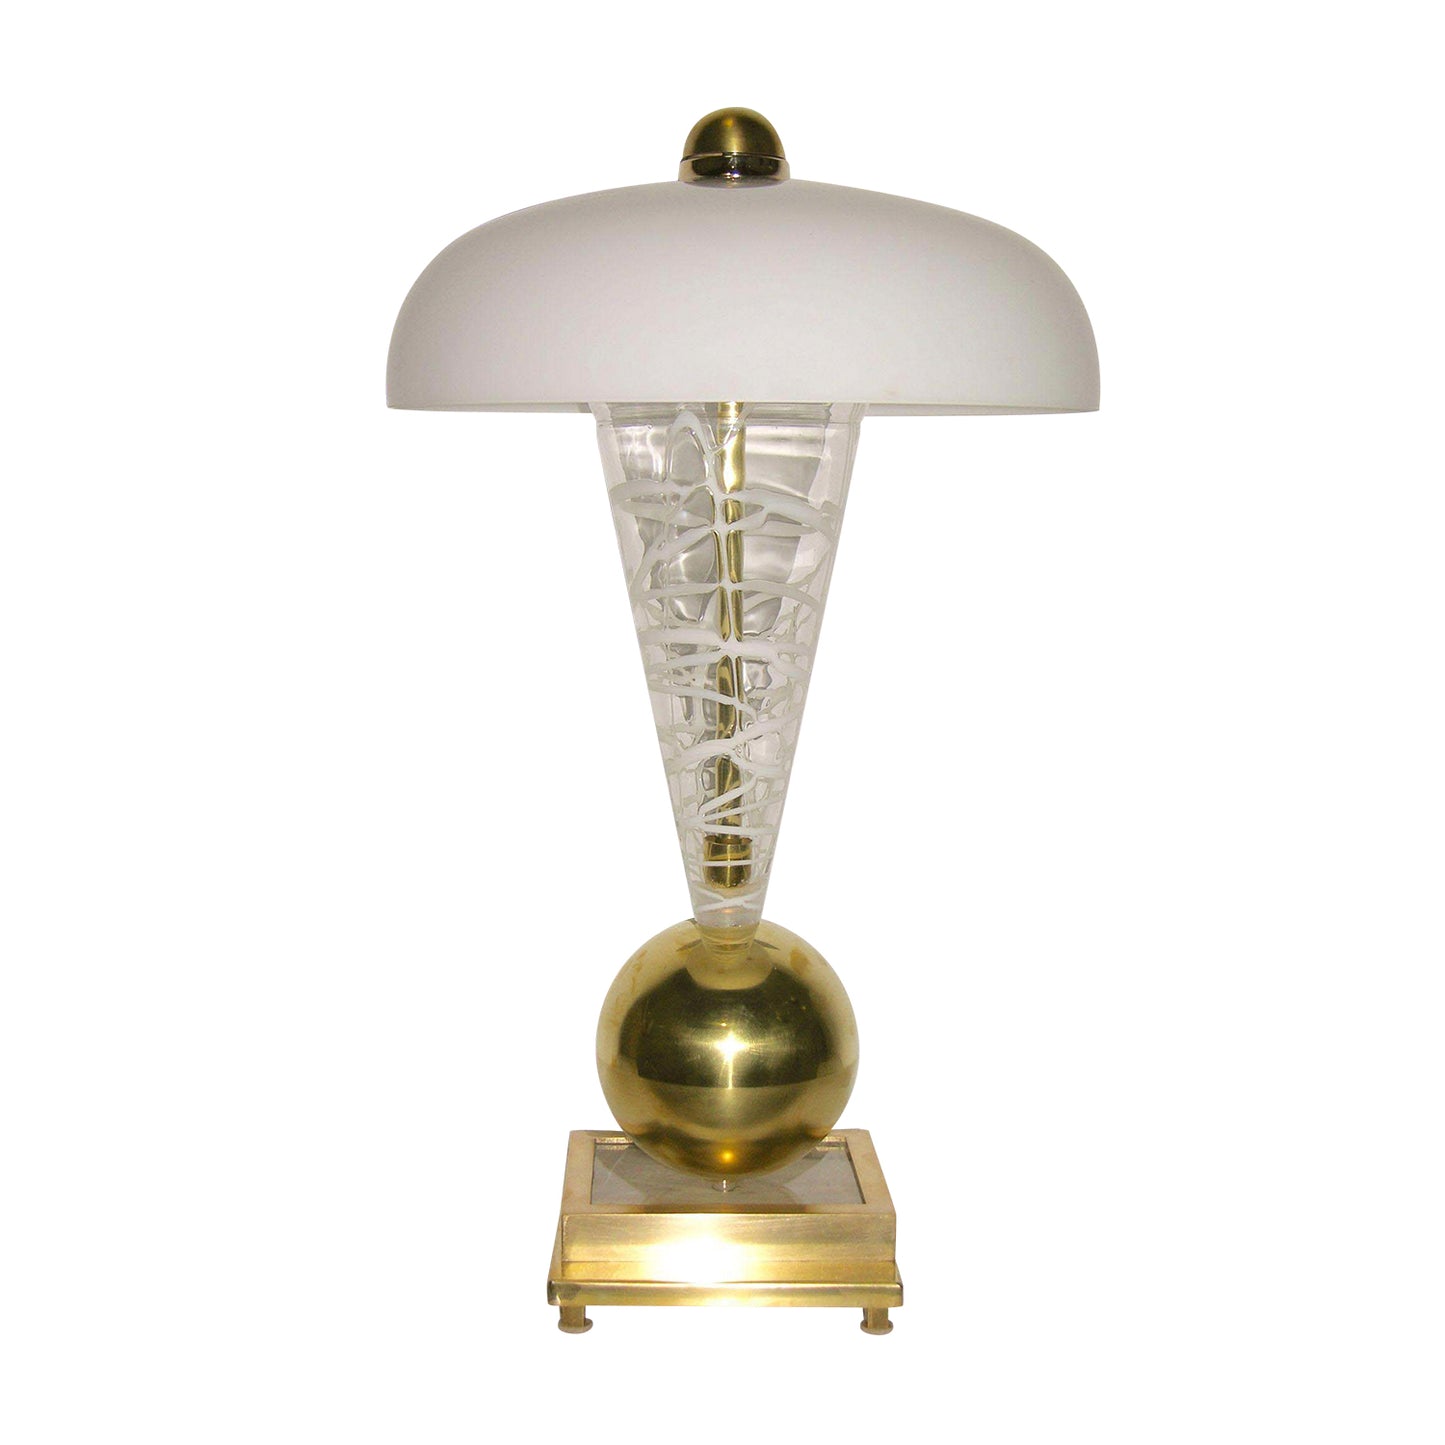 1970s Italian Murano Glass Lamp Attributed to Vistosi